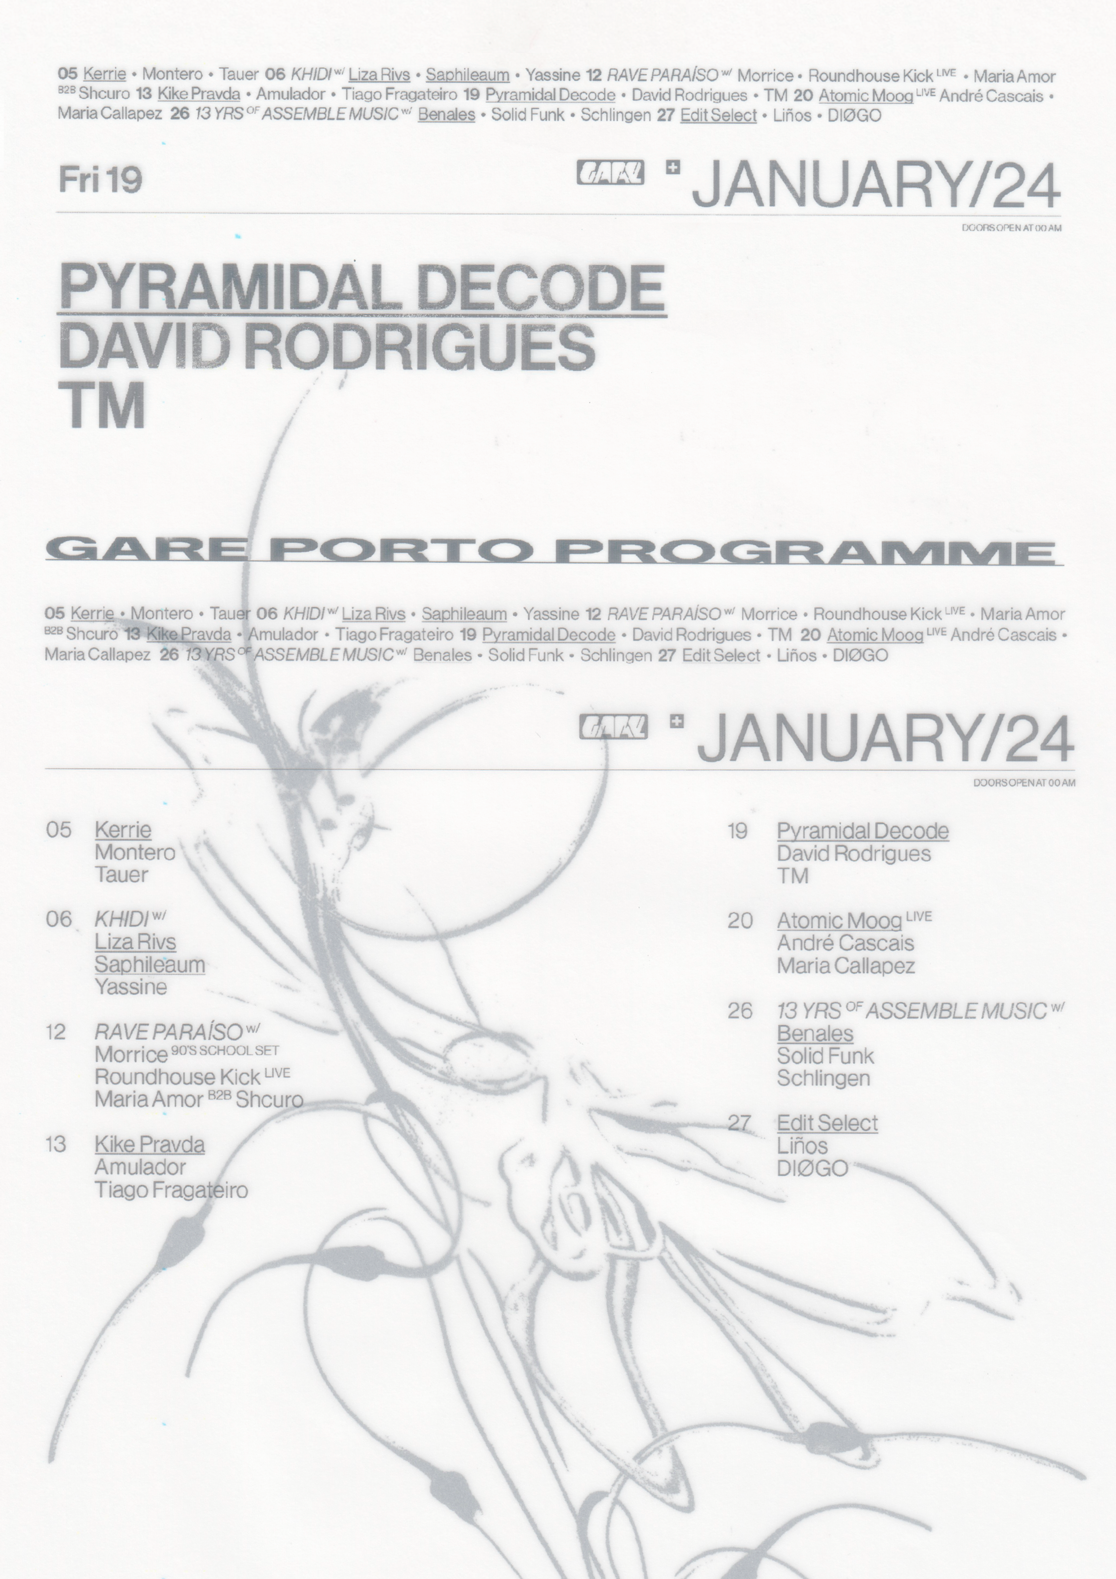 Pyramidal Decode + David Rodrigues + TM - フライヤー表